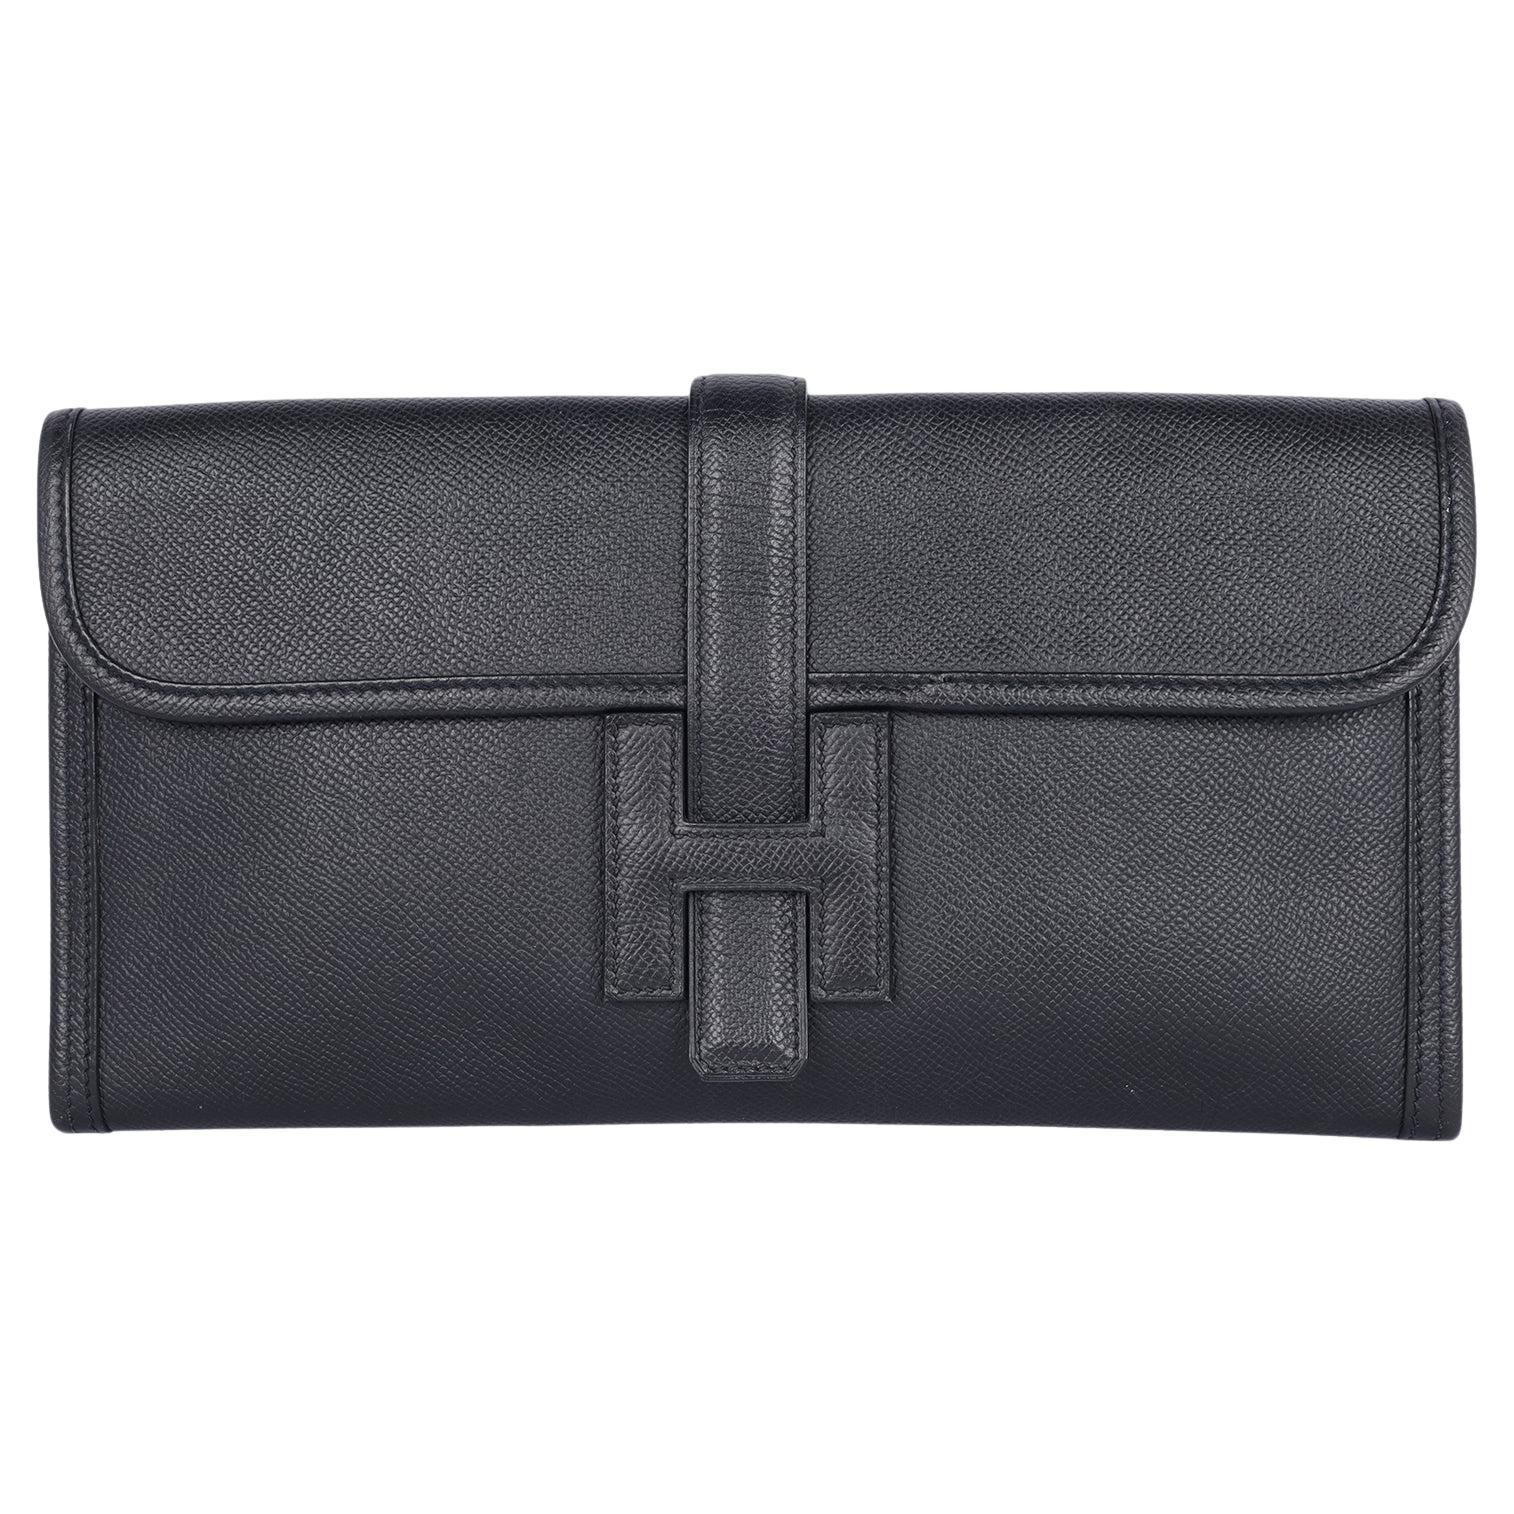 Hermes Black Leather Swift Jige Elan 29 Evening Bag Clutch For Sale